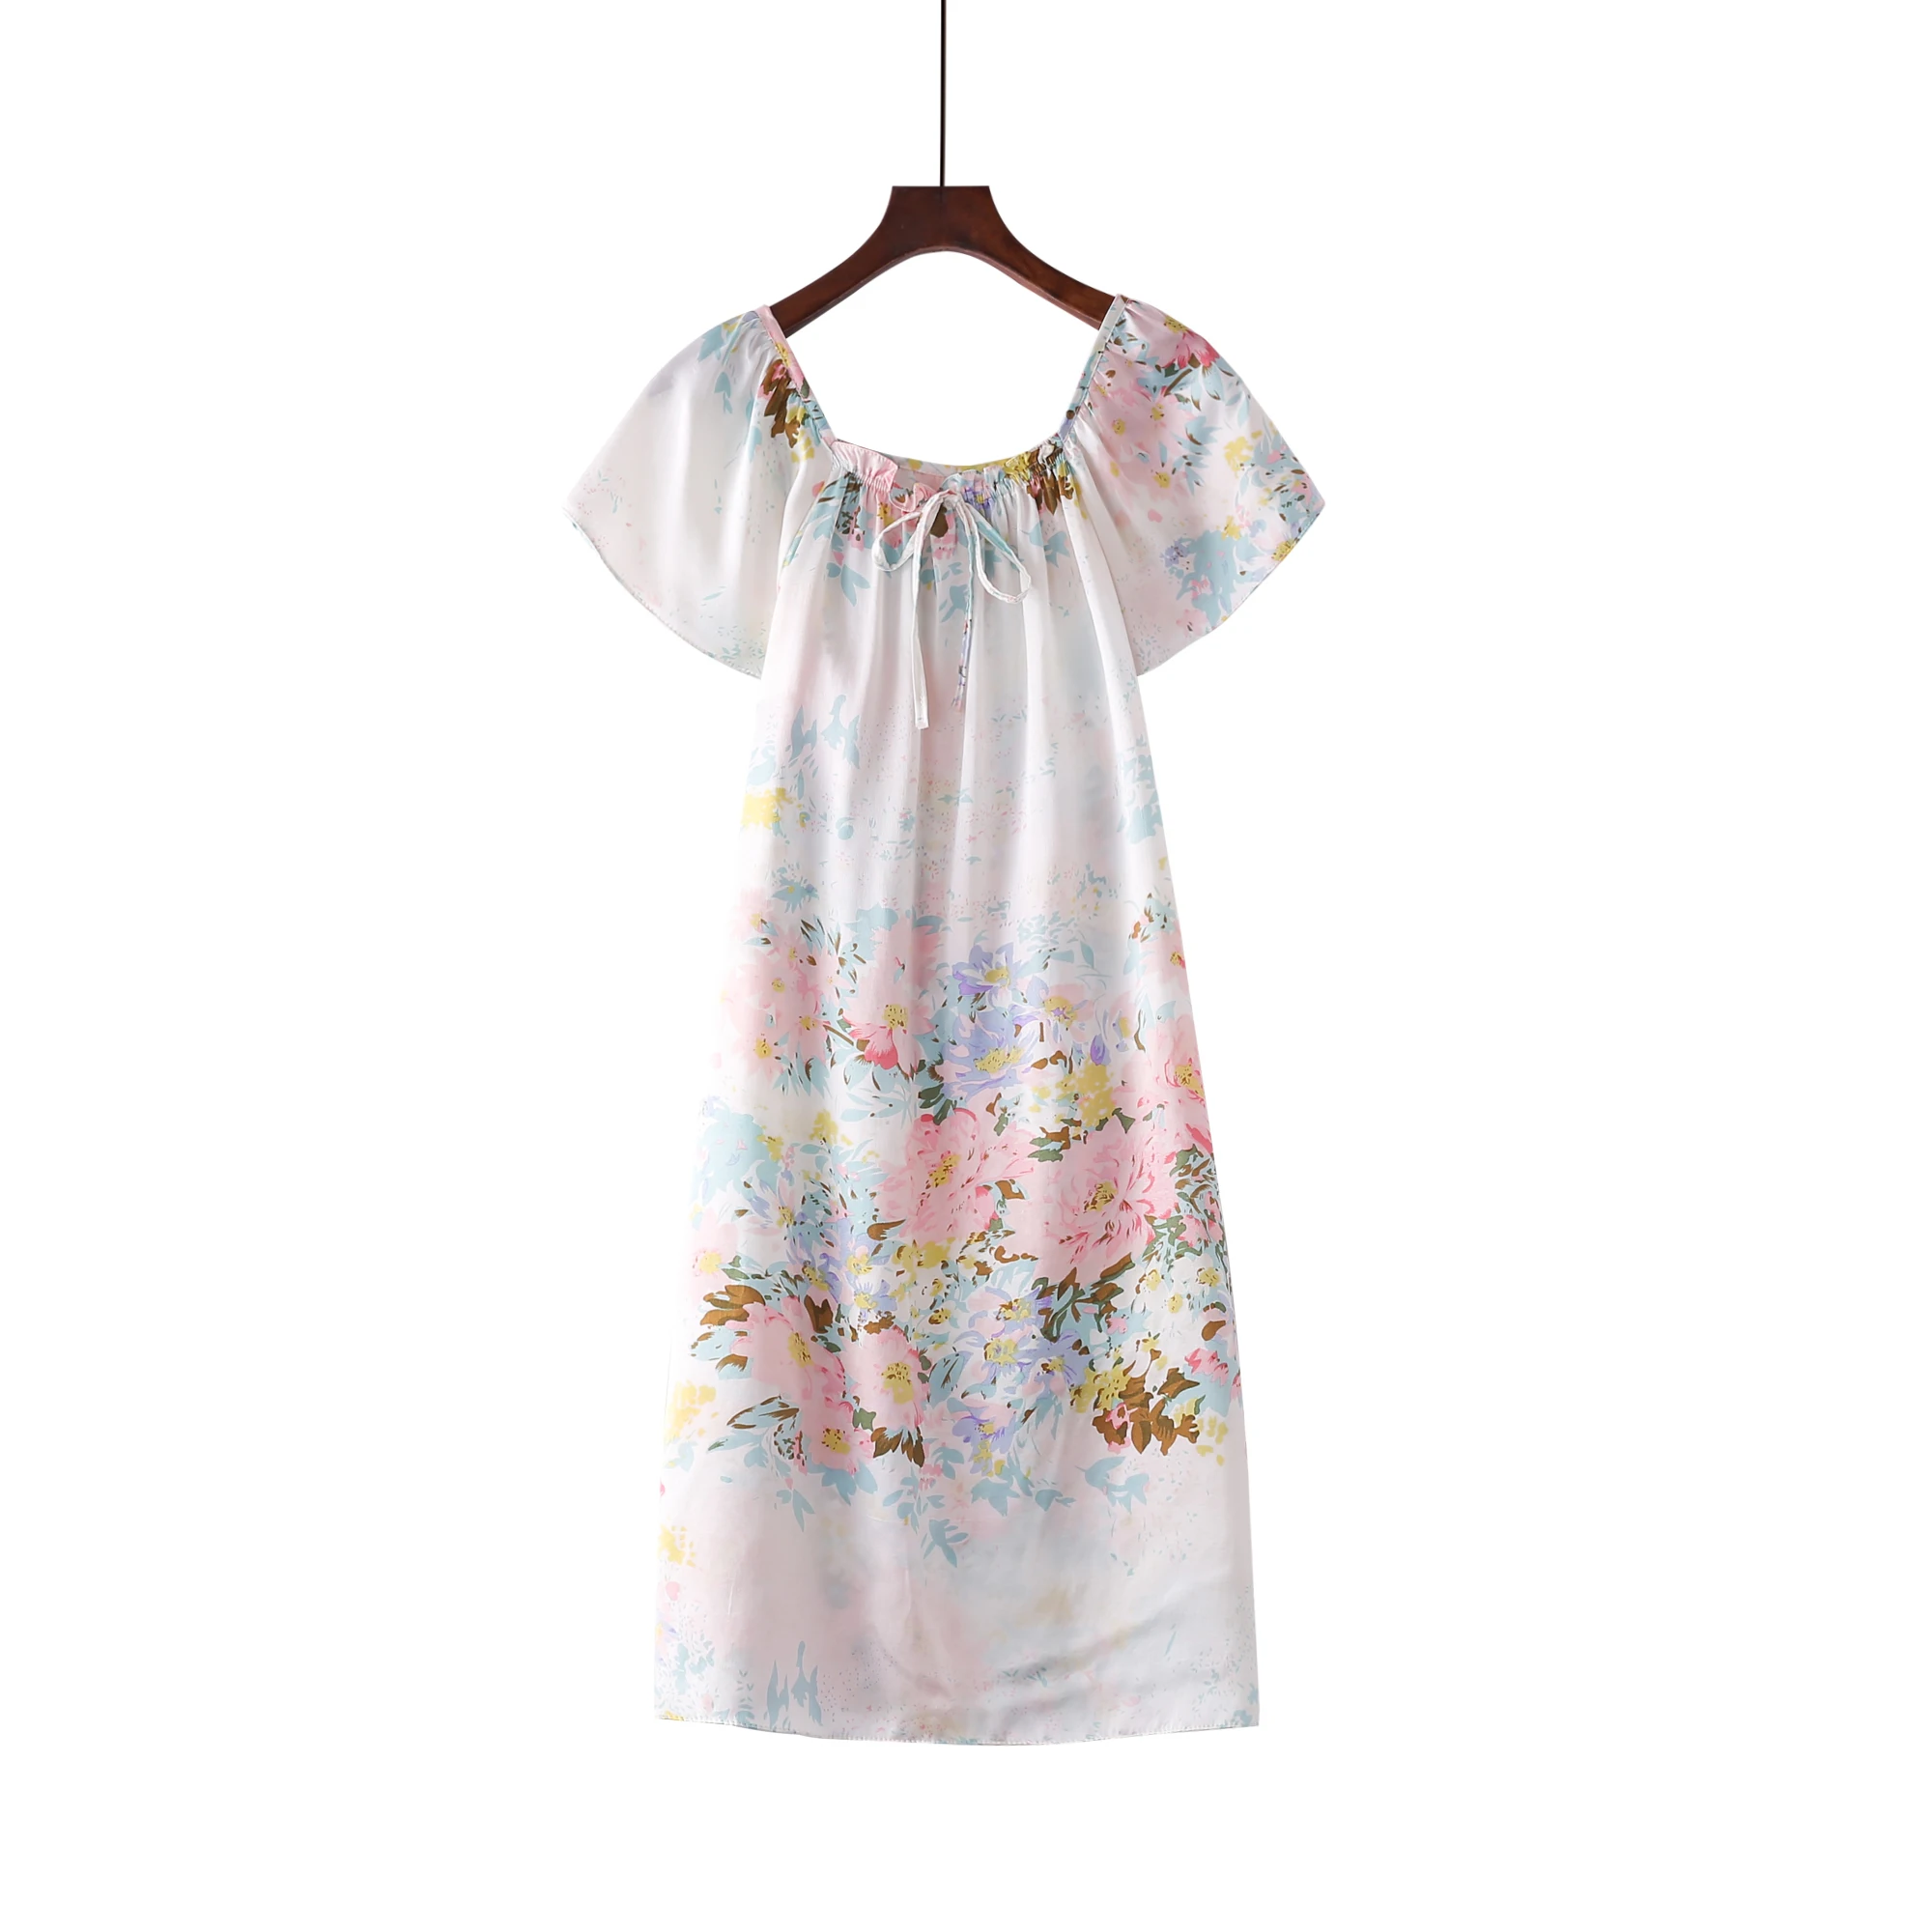 Чистый шелк тутового цвета с цветочным рисунком, ночная рубашка, модная ночная рубашка, мягкая одежда для сна, летнее платье, разные цвета, свободный размер